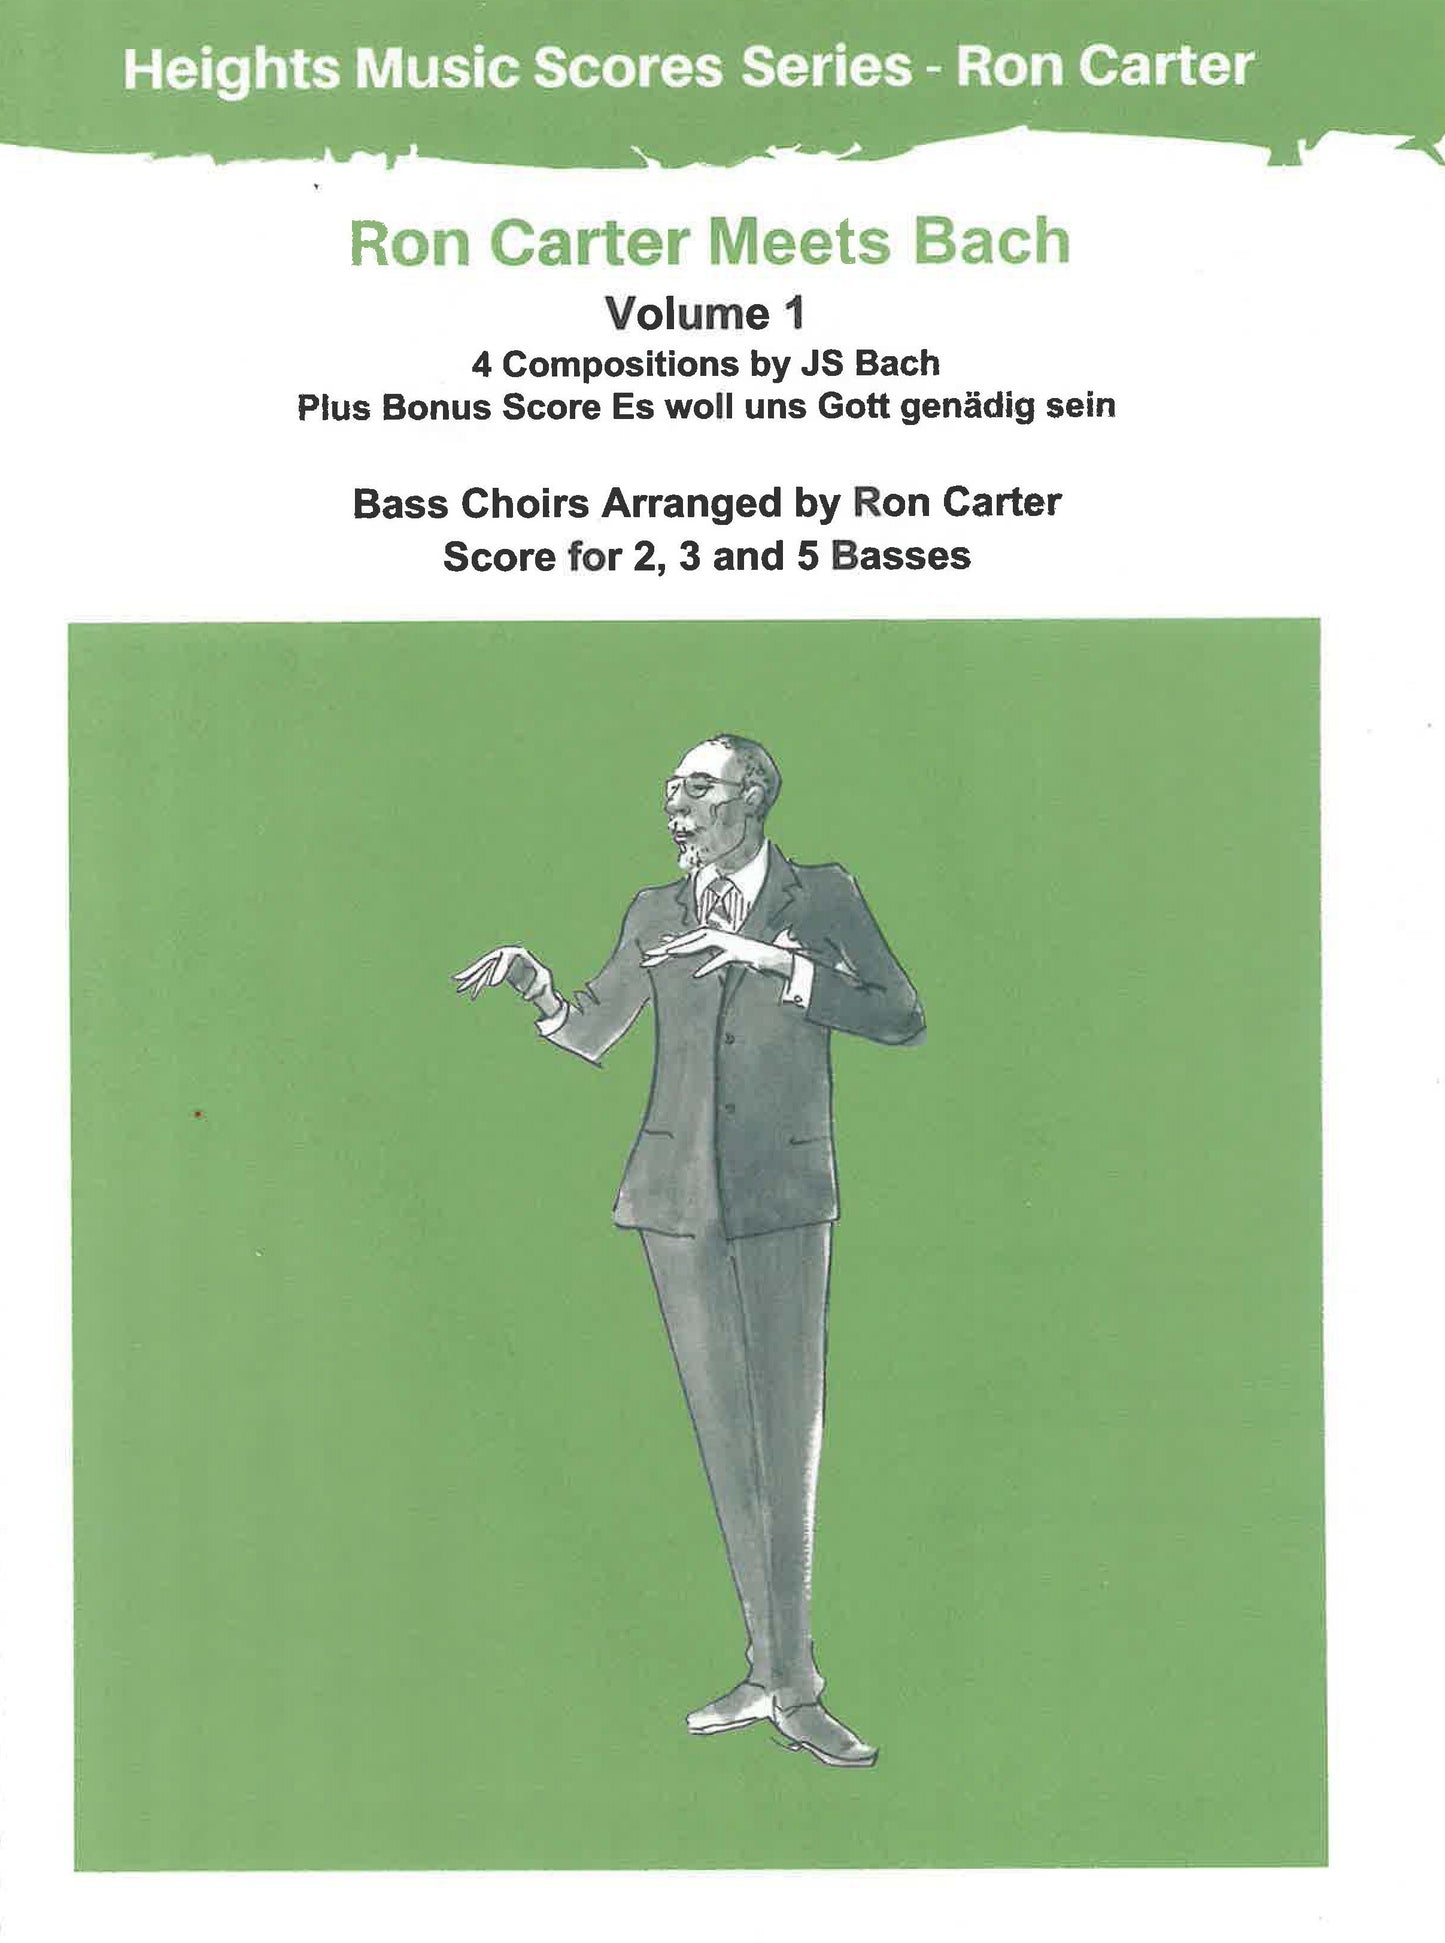 Carter: Ron Carter Meets Bach Volume 1